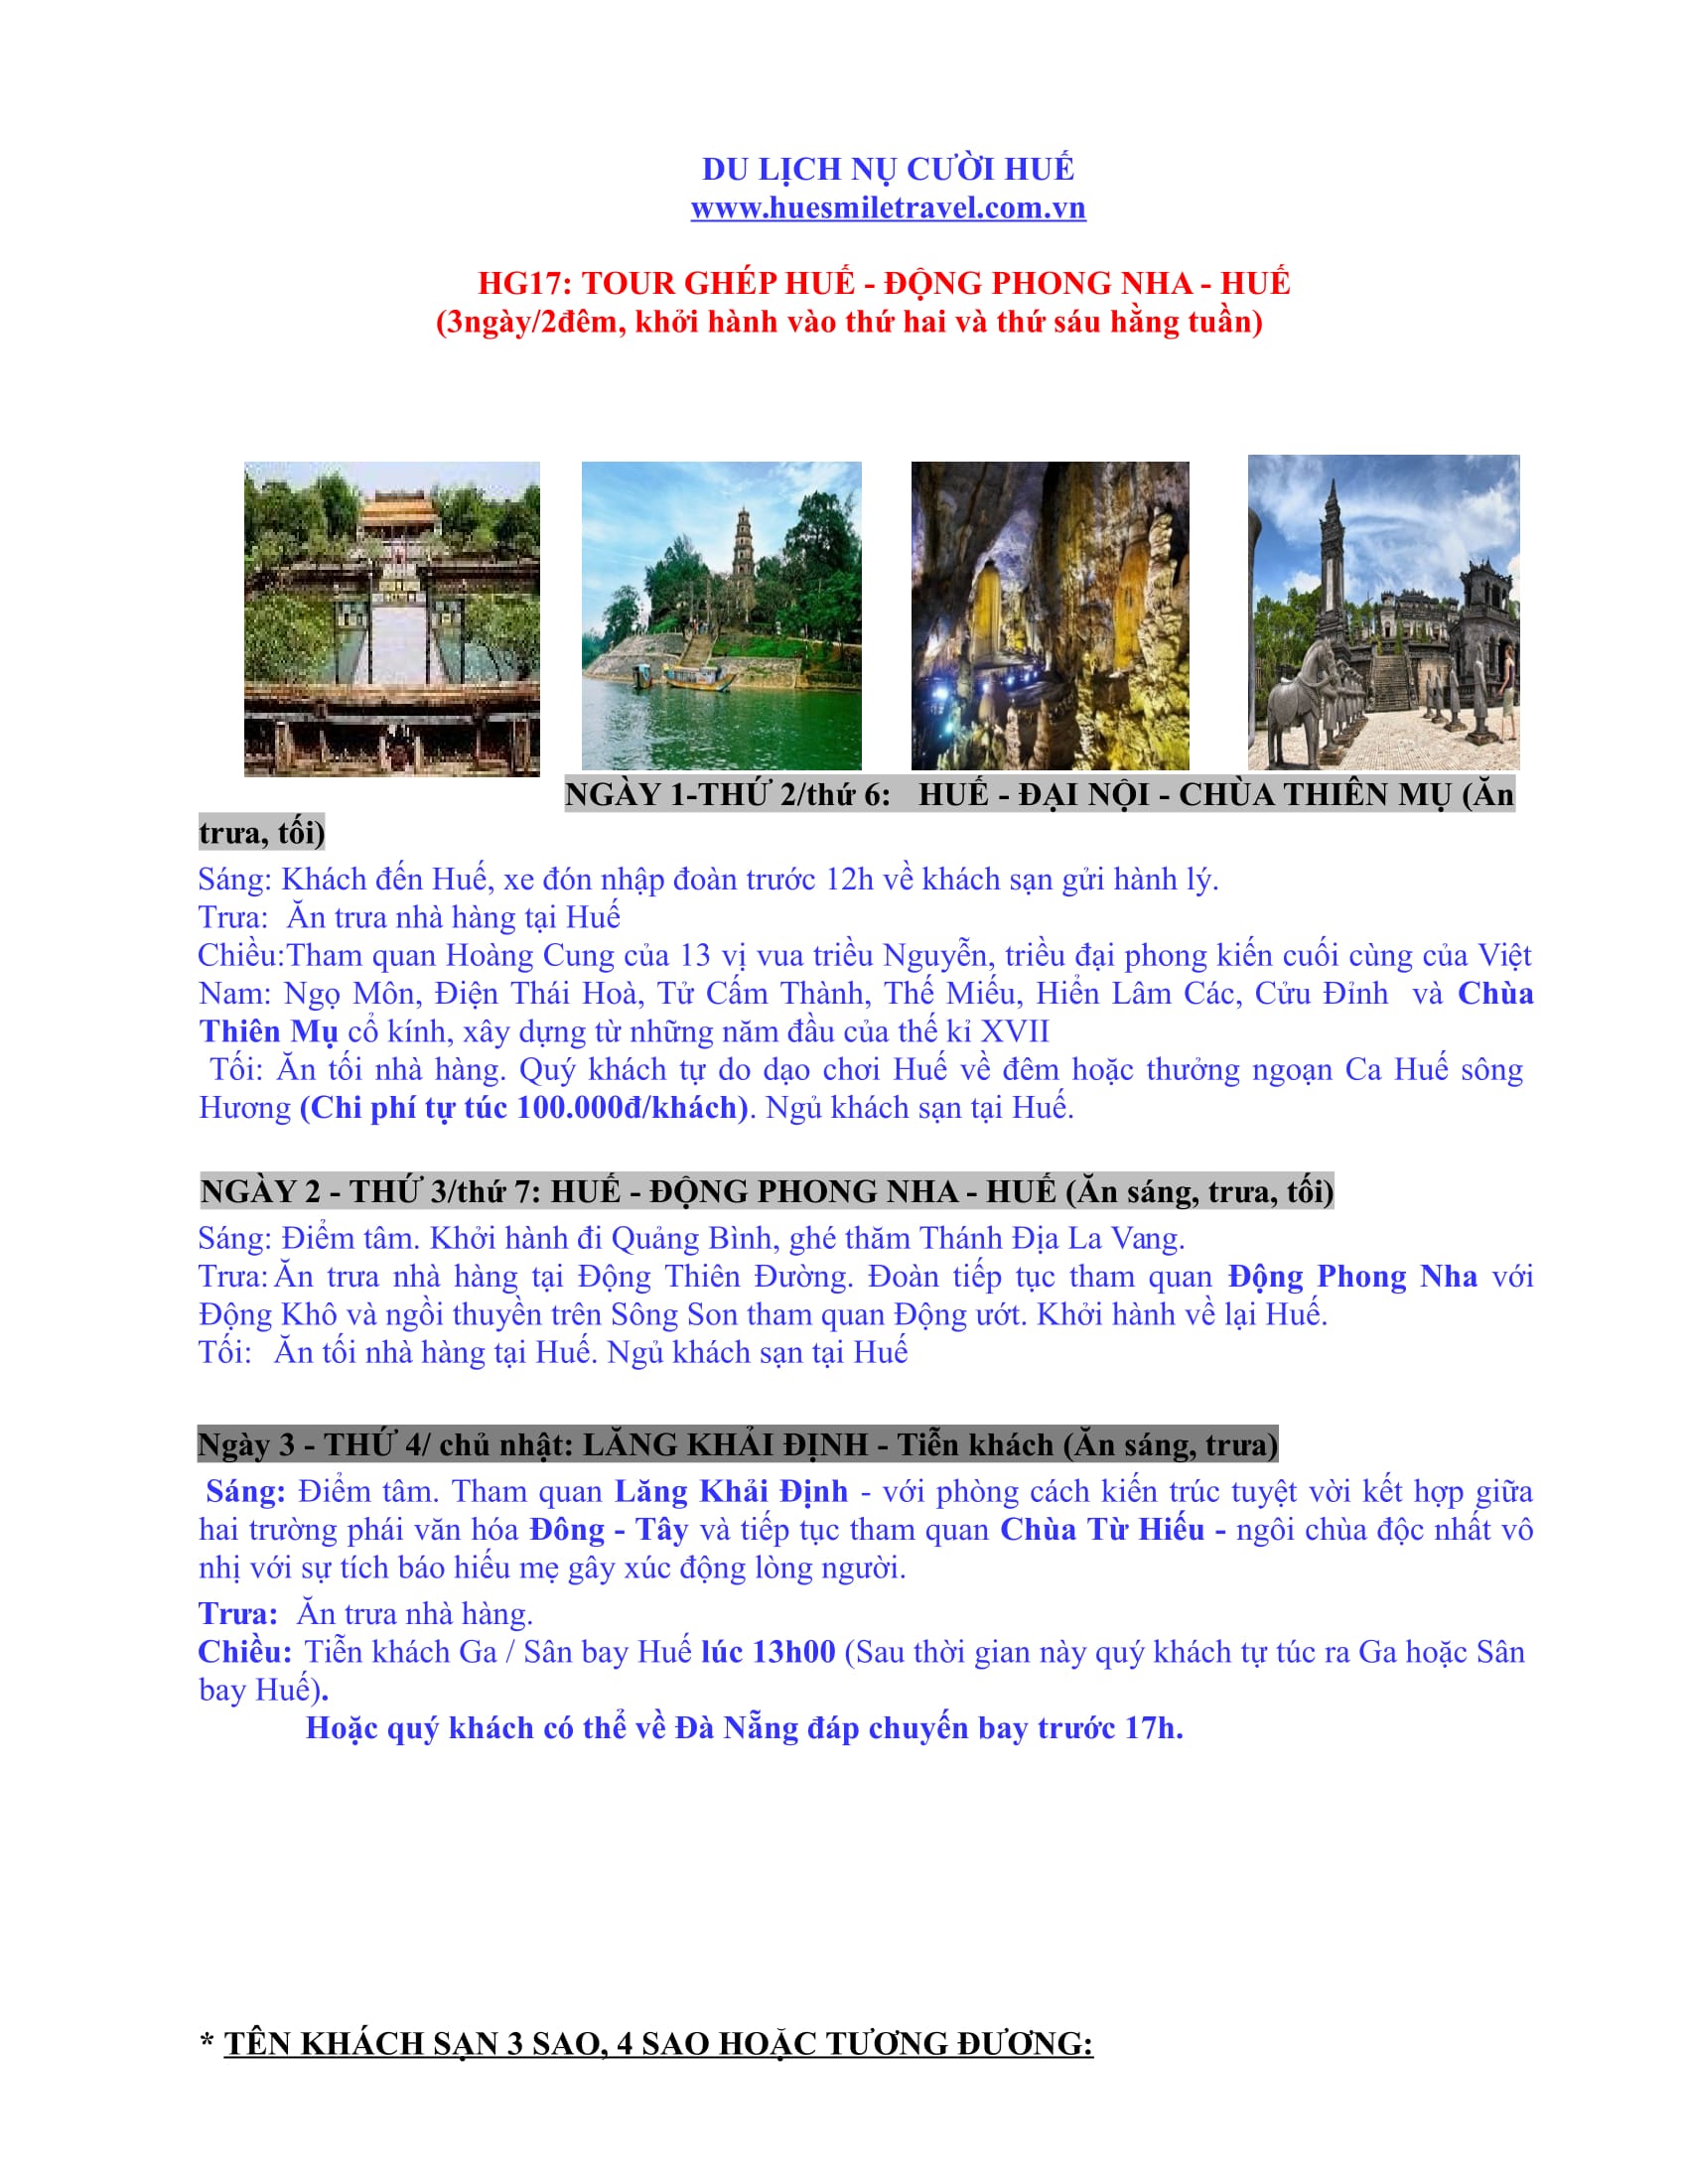 Tour ghép Huế - Động Phong Nha - Huế